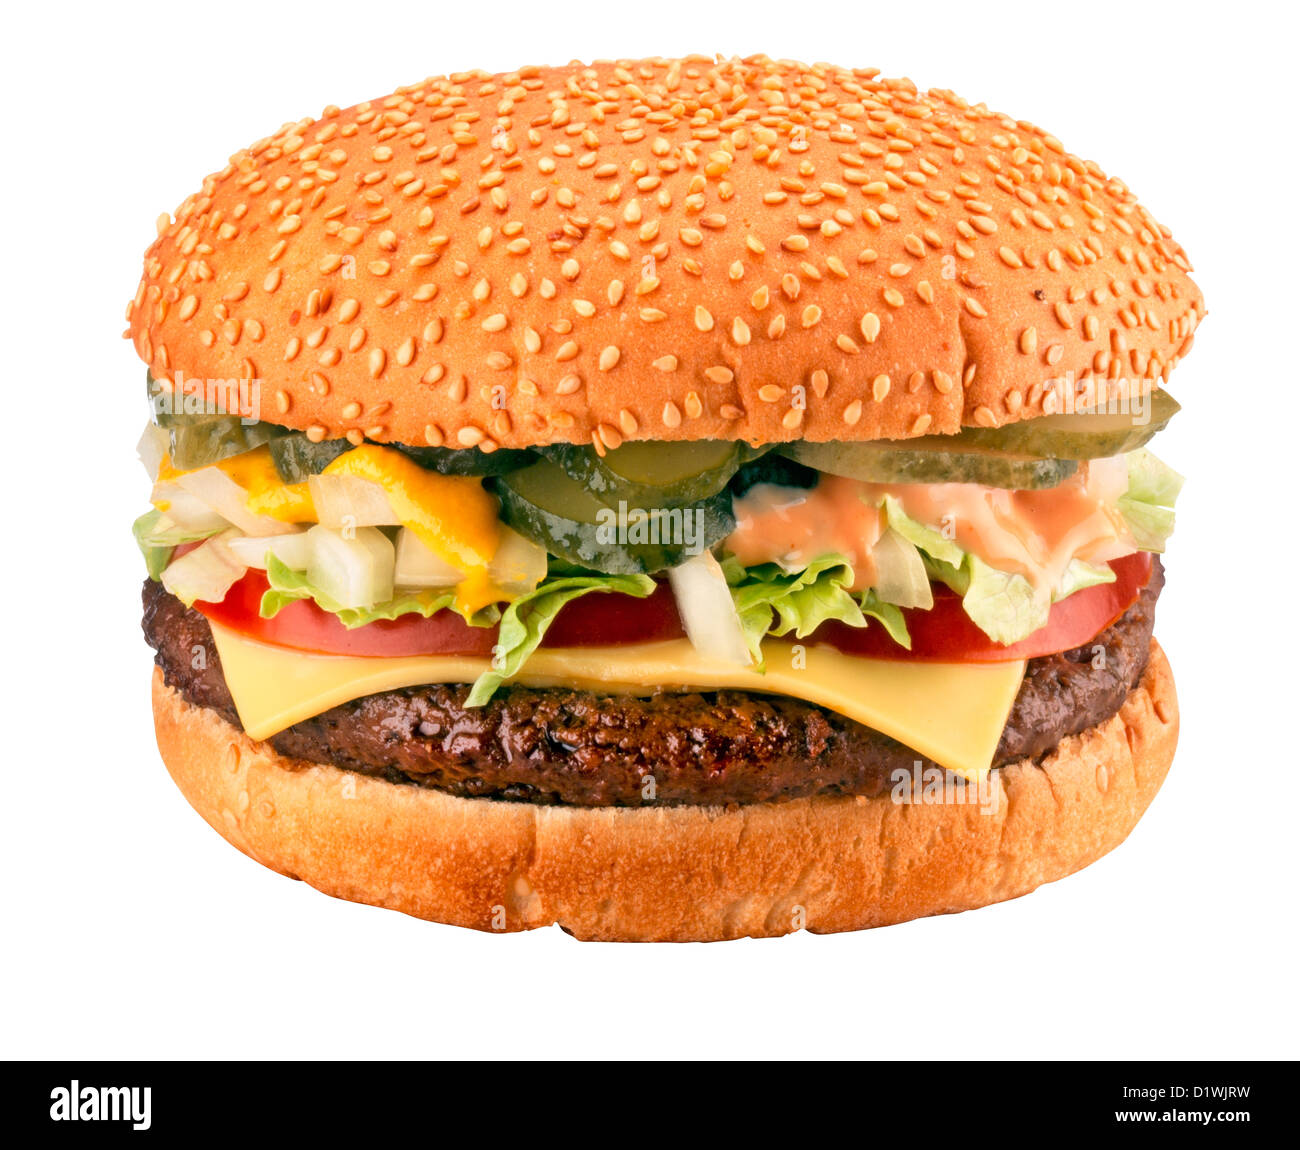 Recorte de una hamburguesa con queso Foto de stock